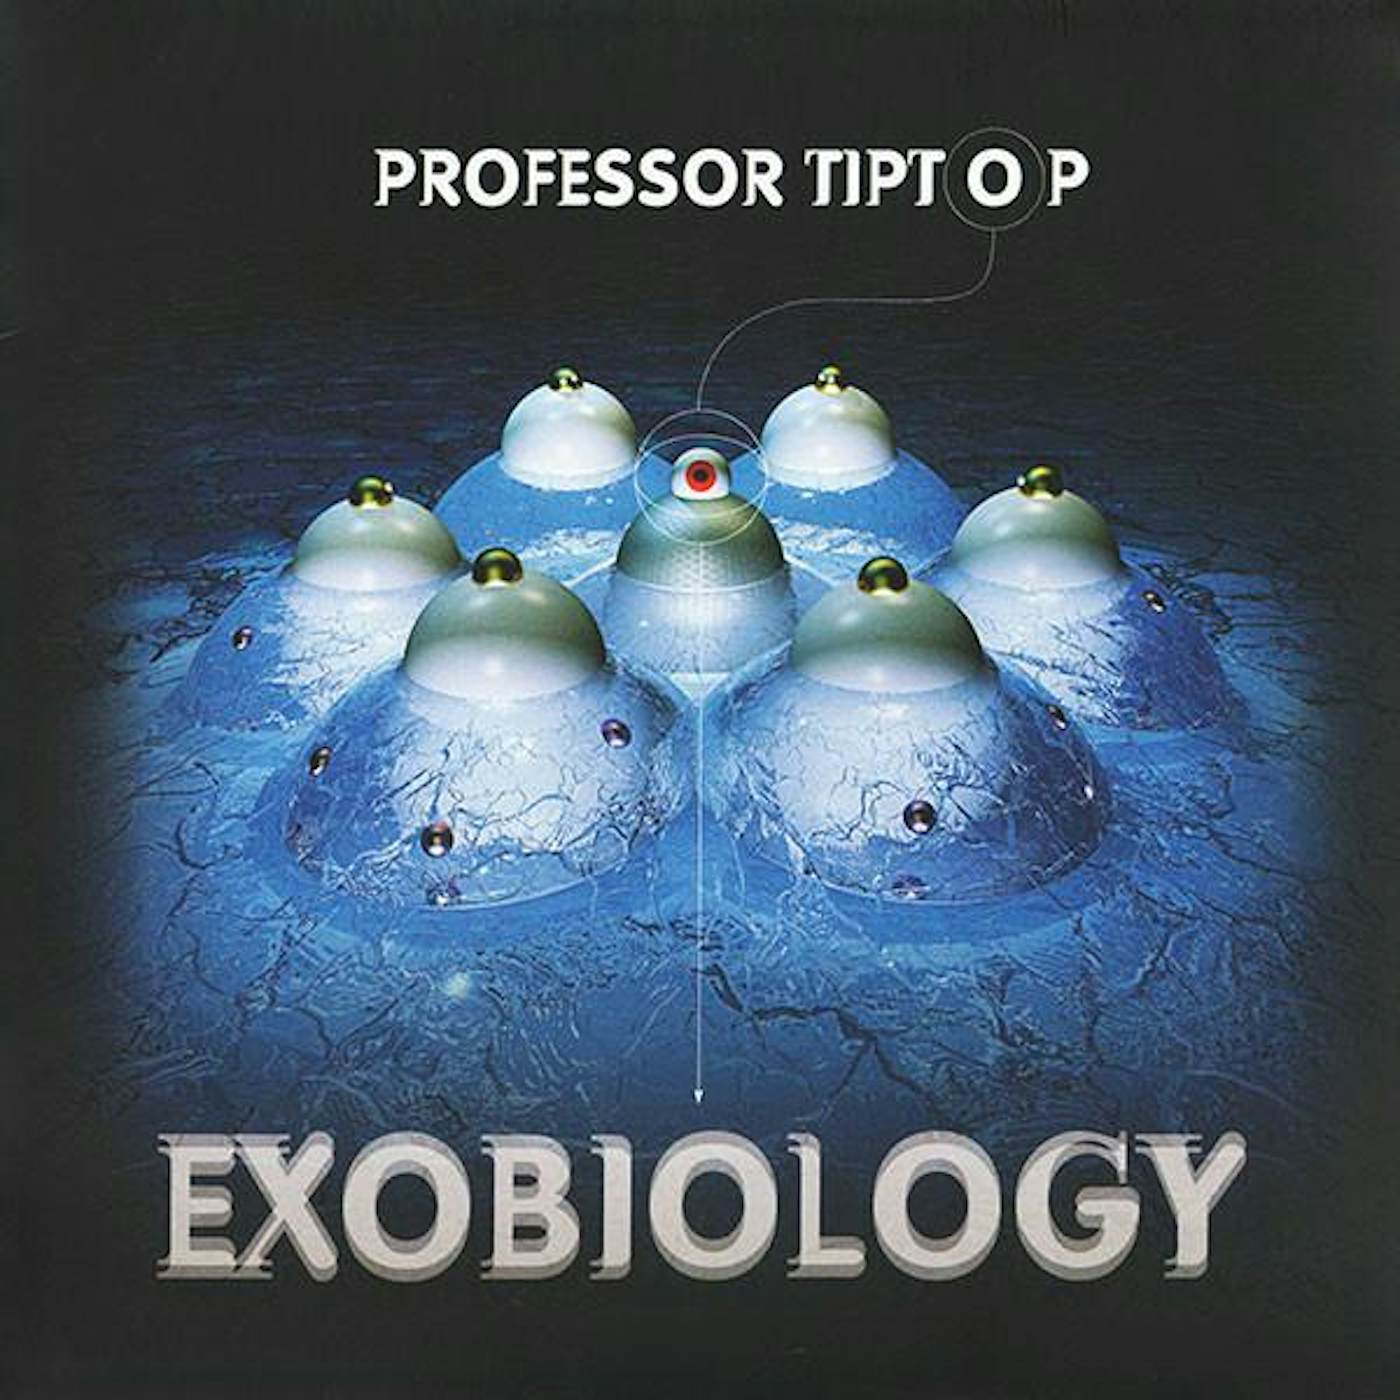 Professor Tip Top EXOBIOLOGY CD